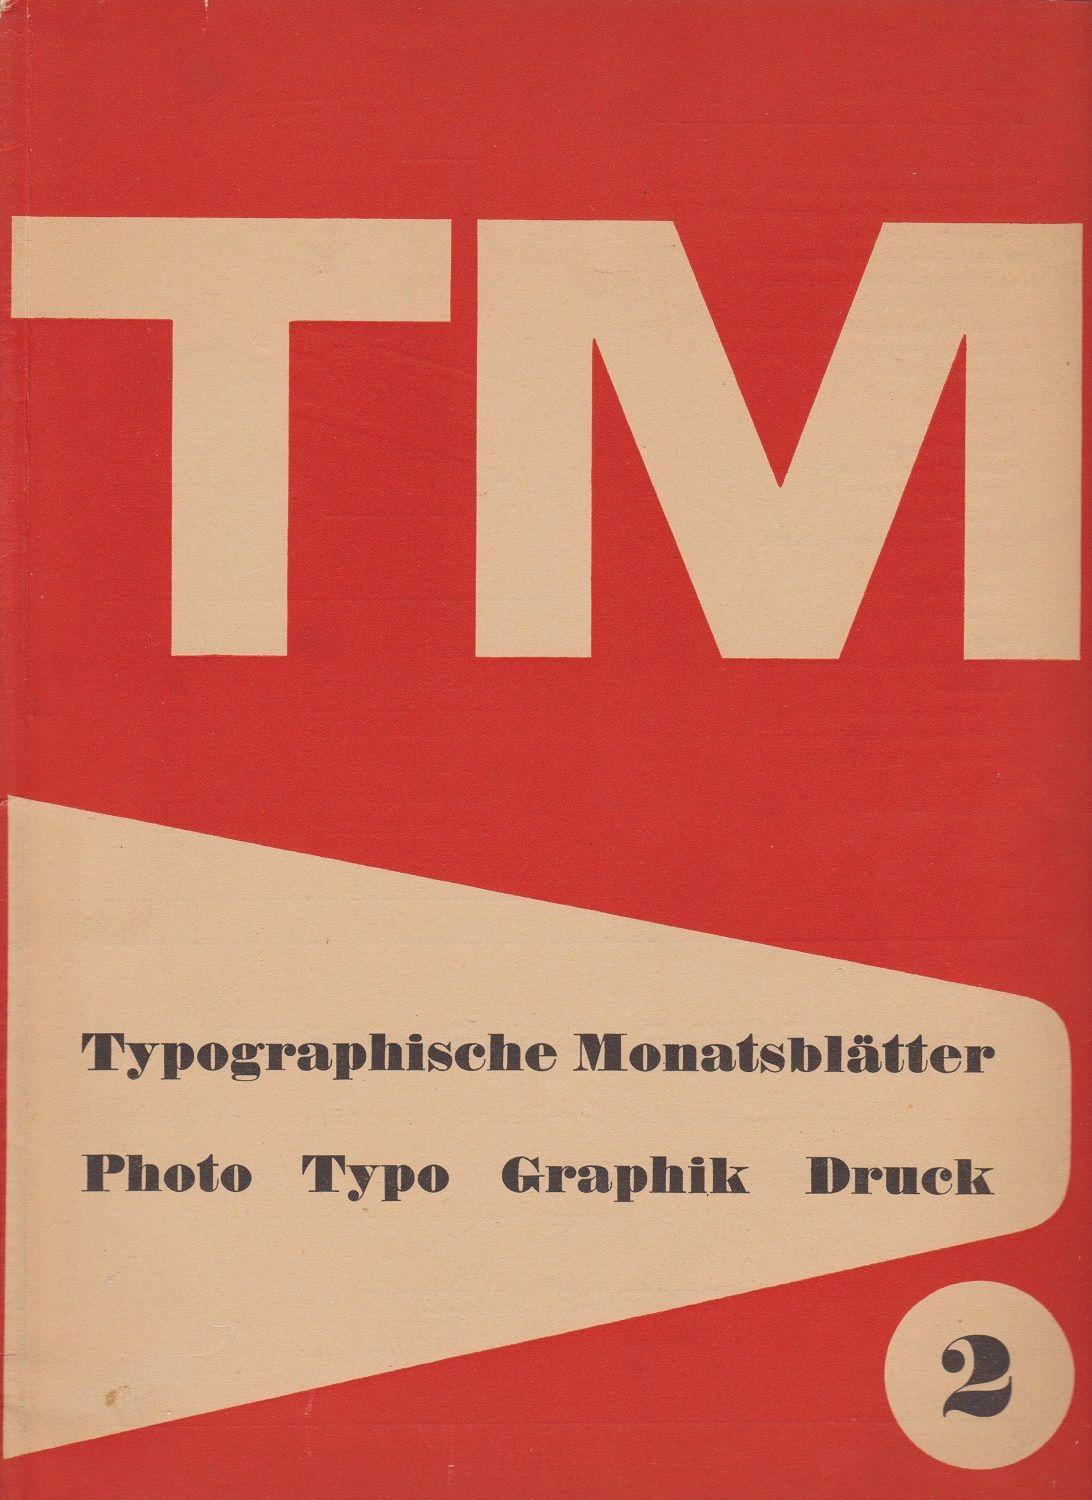 Typographische Monatsblätter Post Image 3